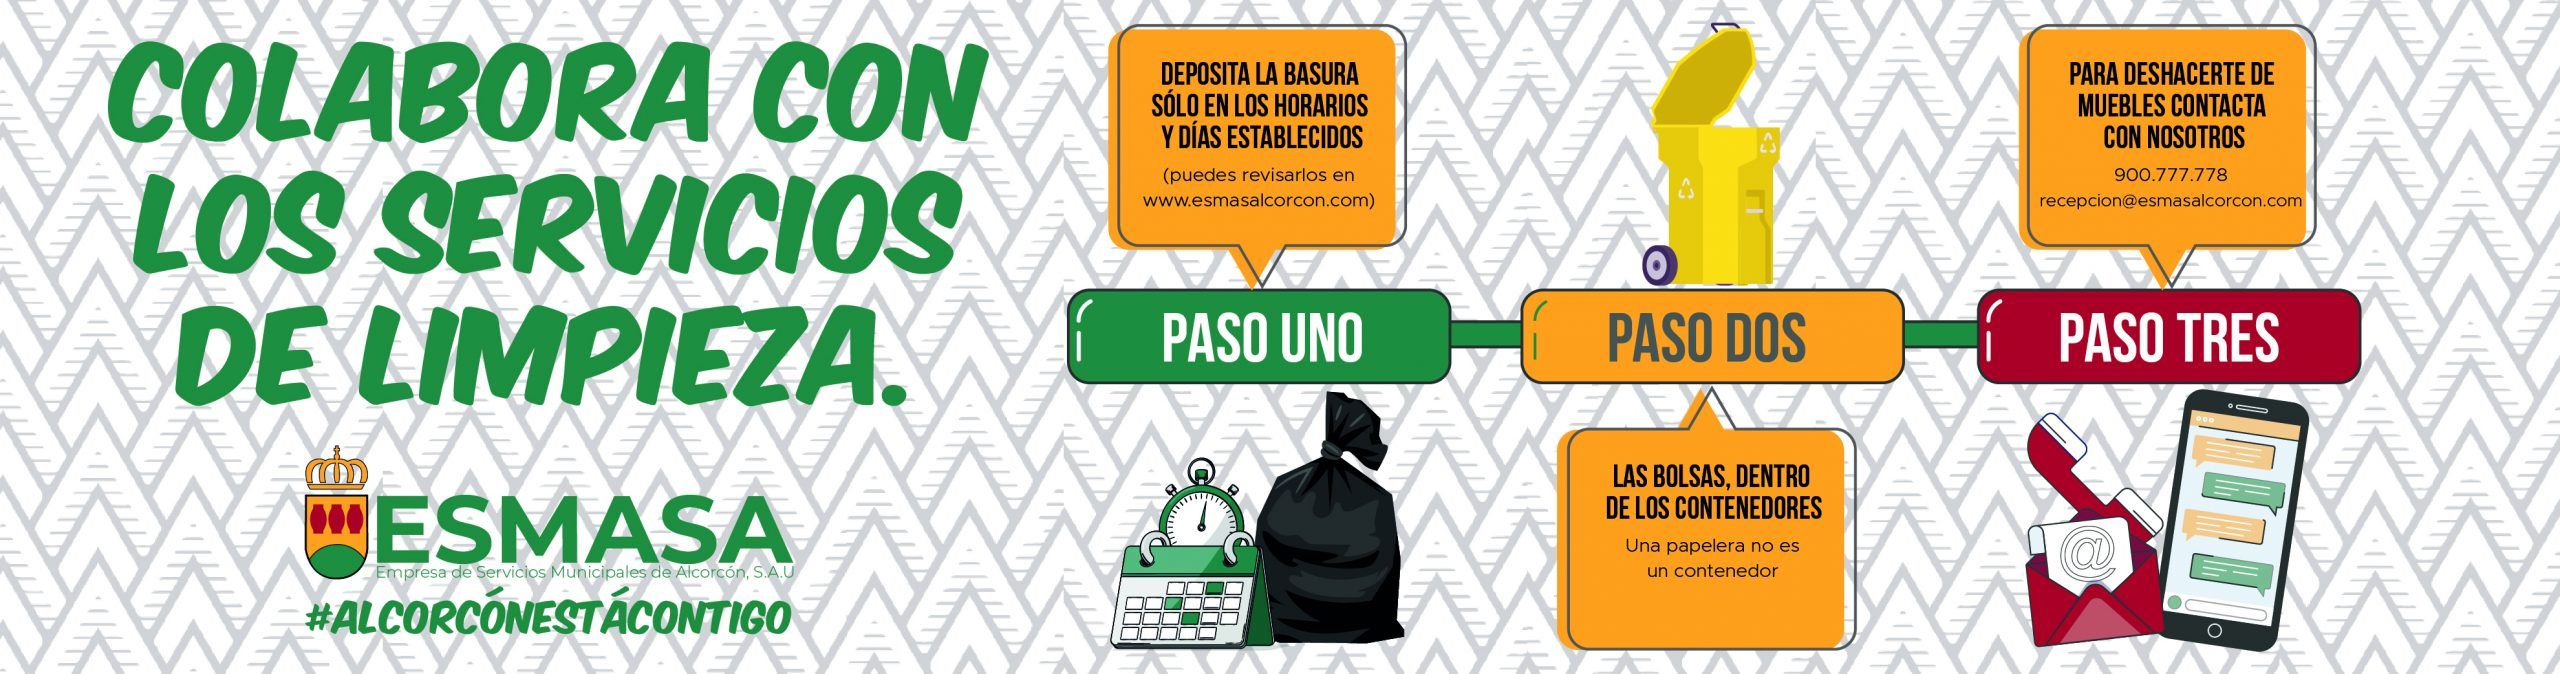 “Depositar los residuos en el cubo facilita la desinfección de los compañeros de ESMASA Alcorcón”